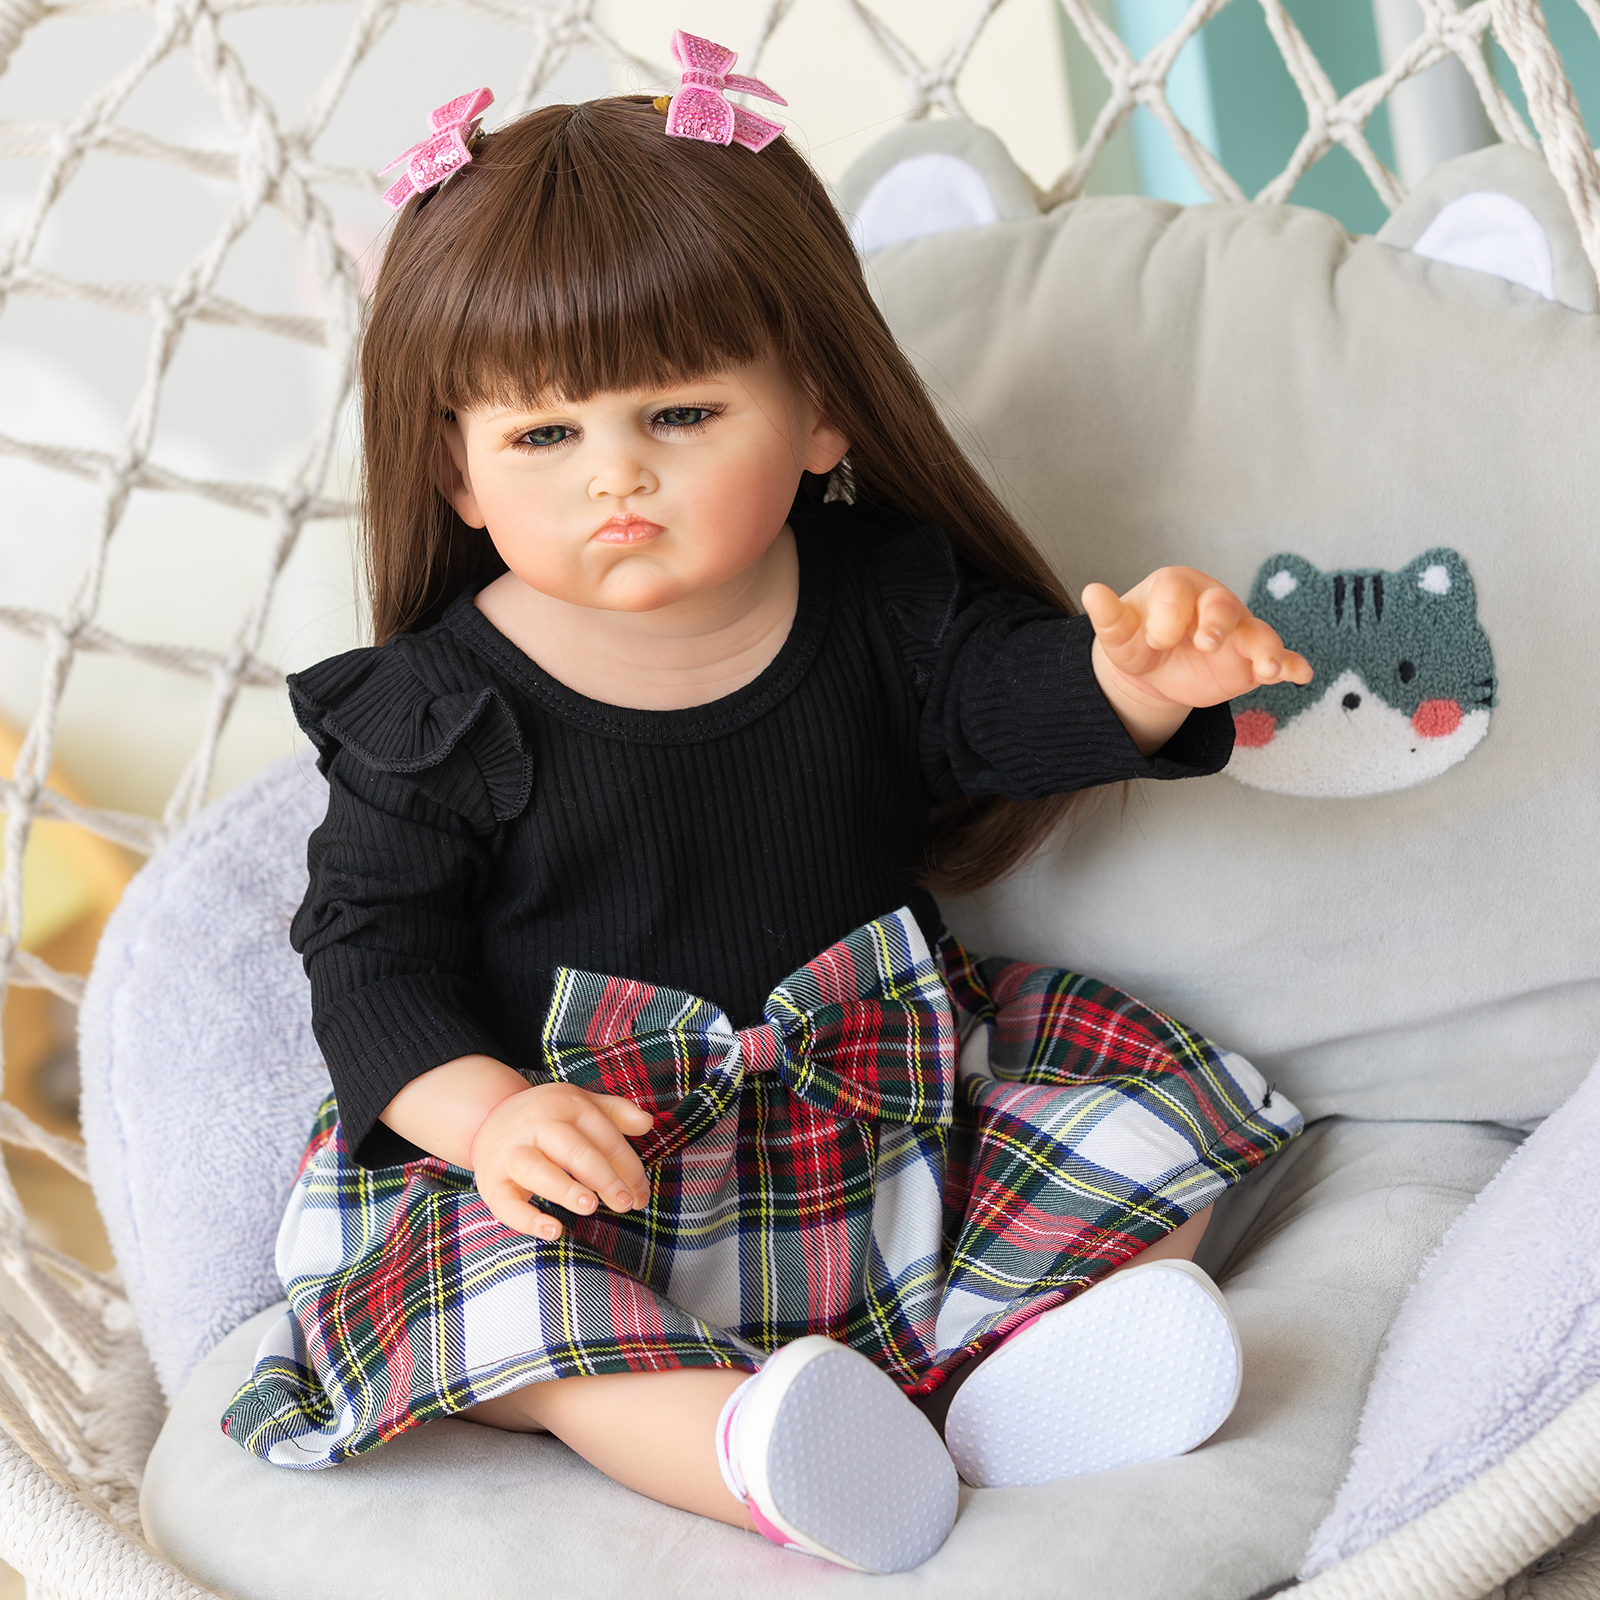 70厘米仿女童Grace服装模特3-6个月宝宝真人比例 创意礼物可爱